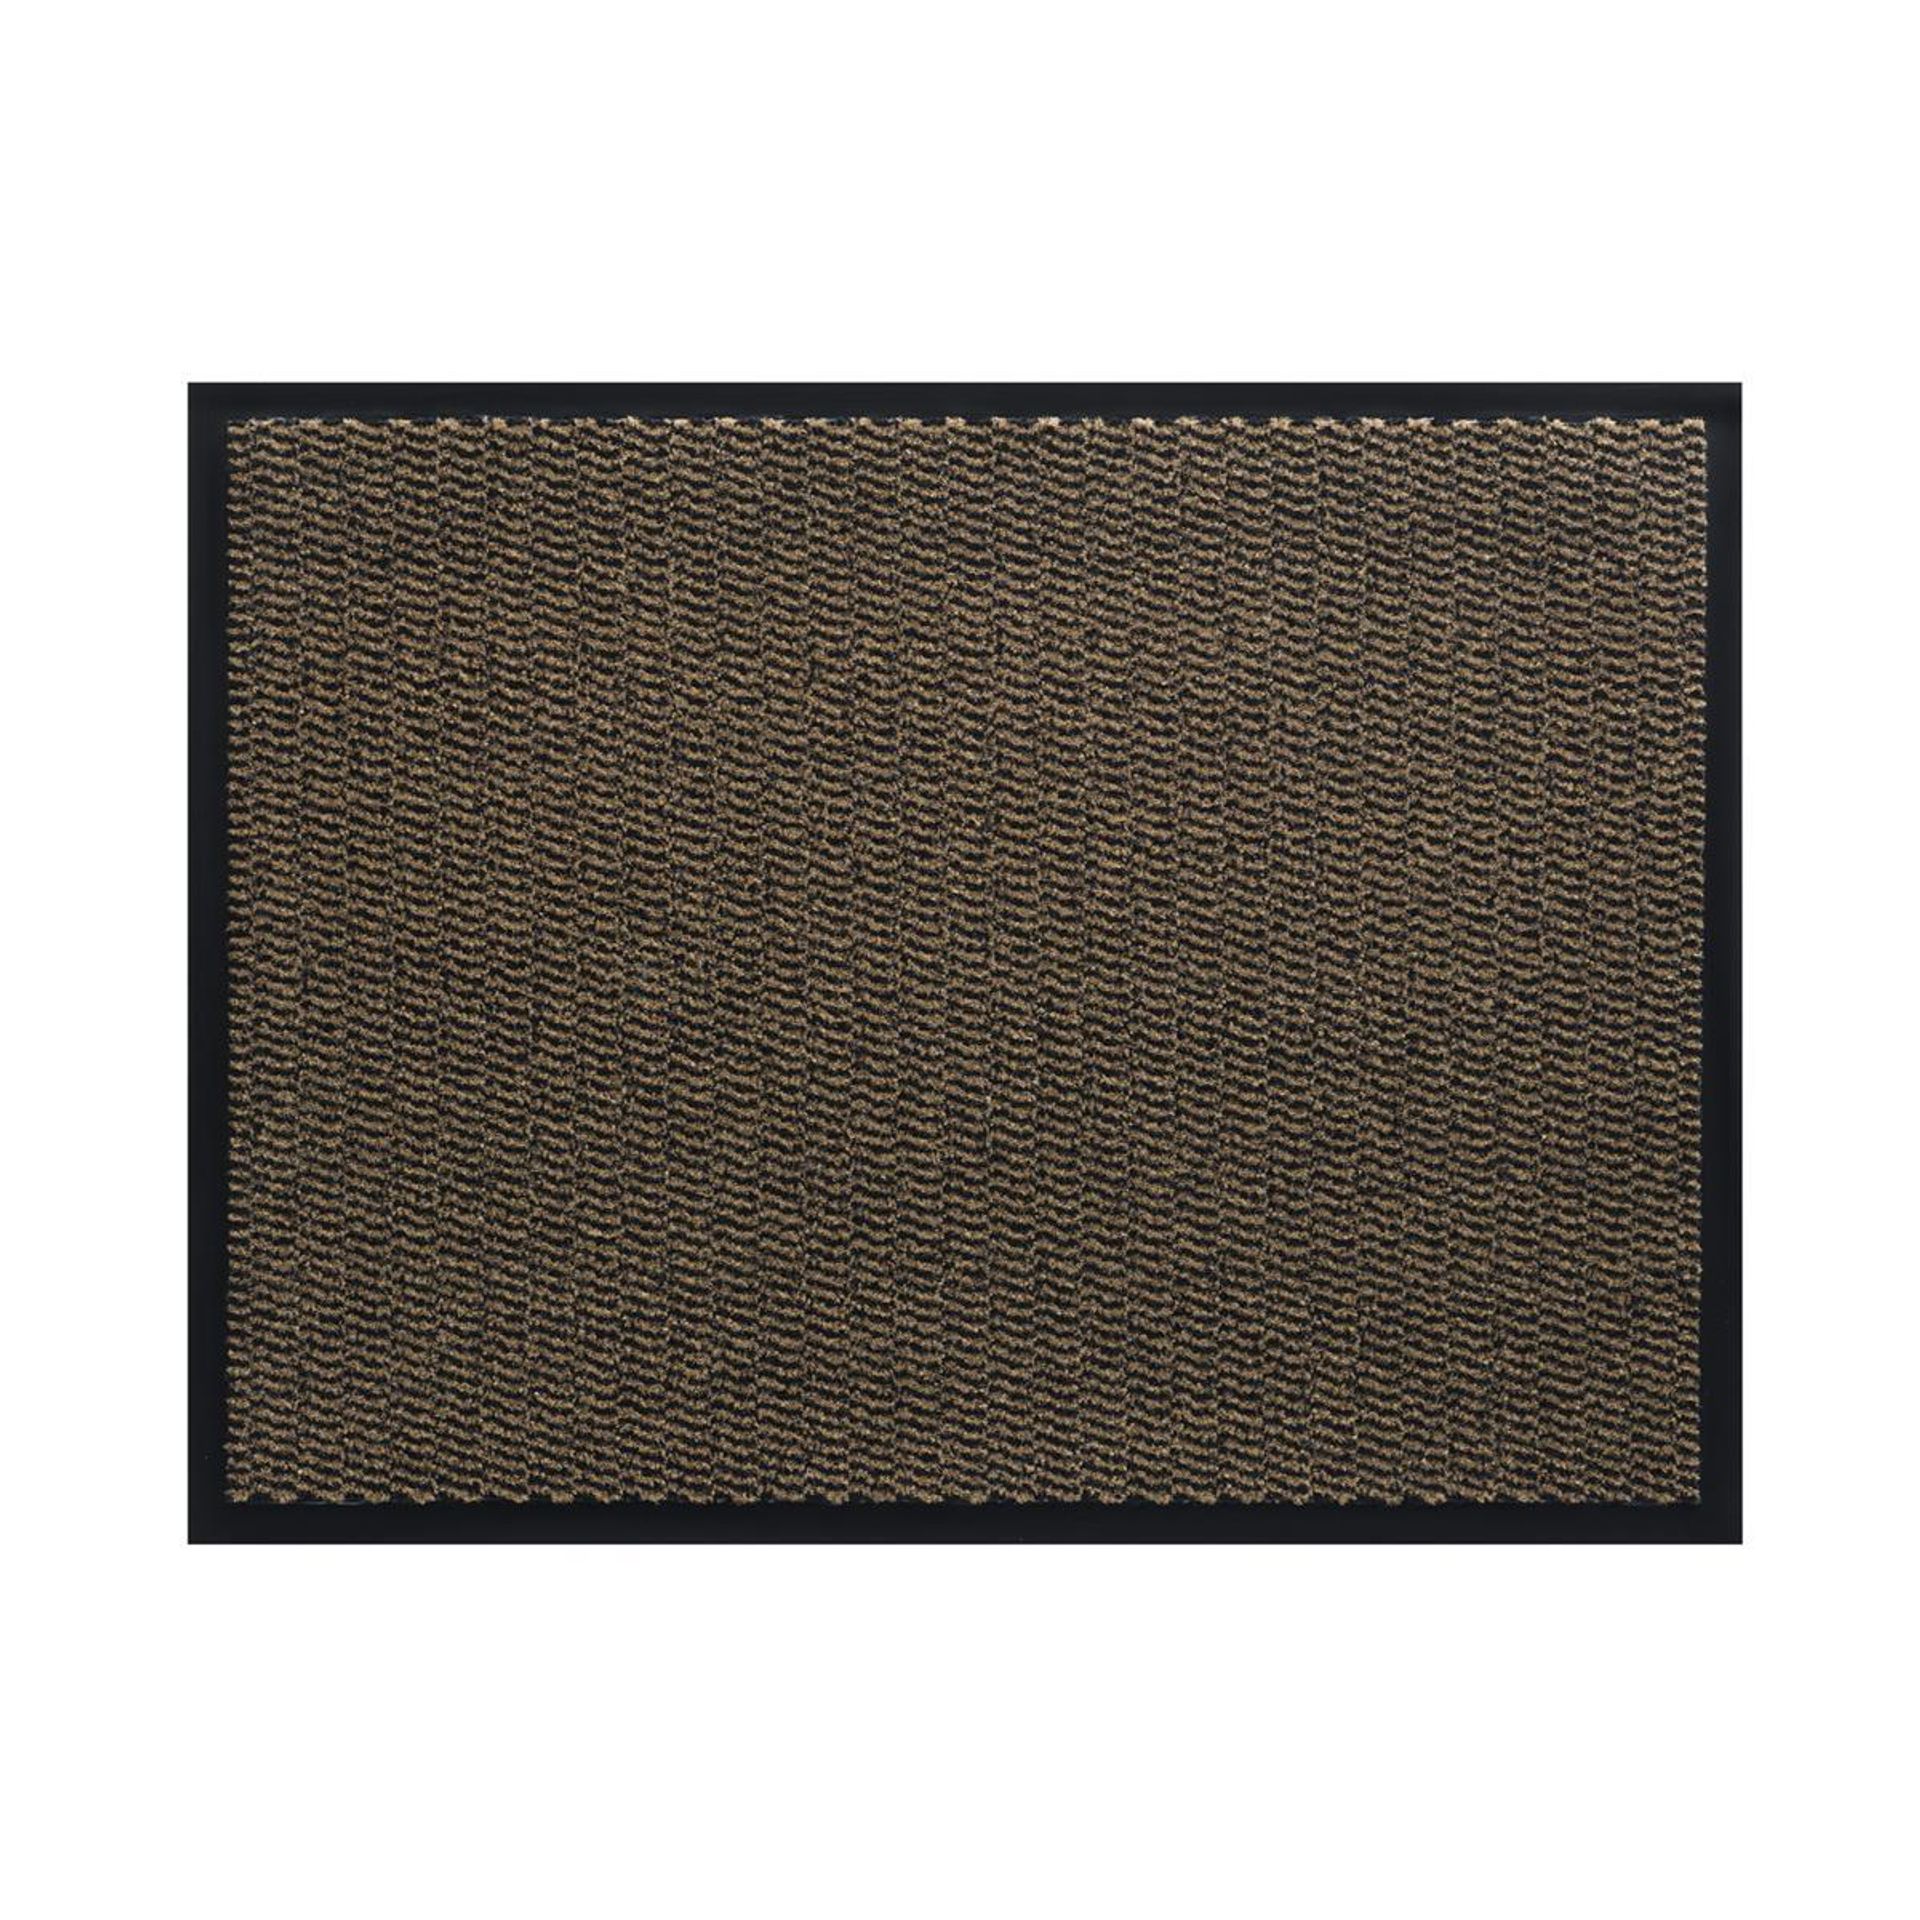 Sauberlauf Innen Spectrum 017 brown - Rollenbreite 90 cm